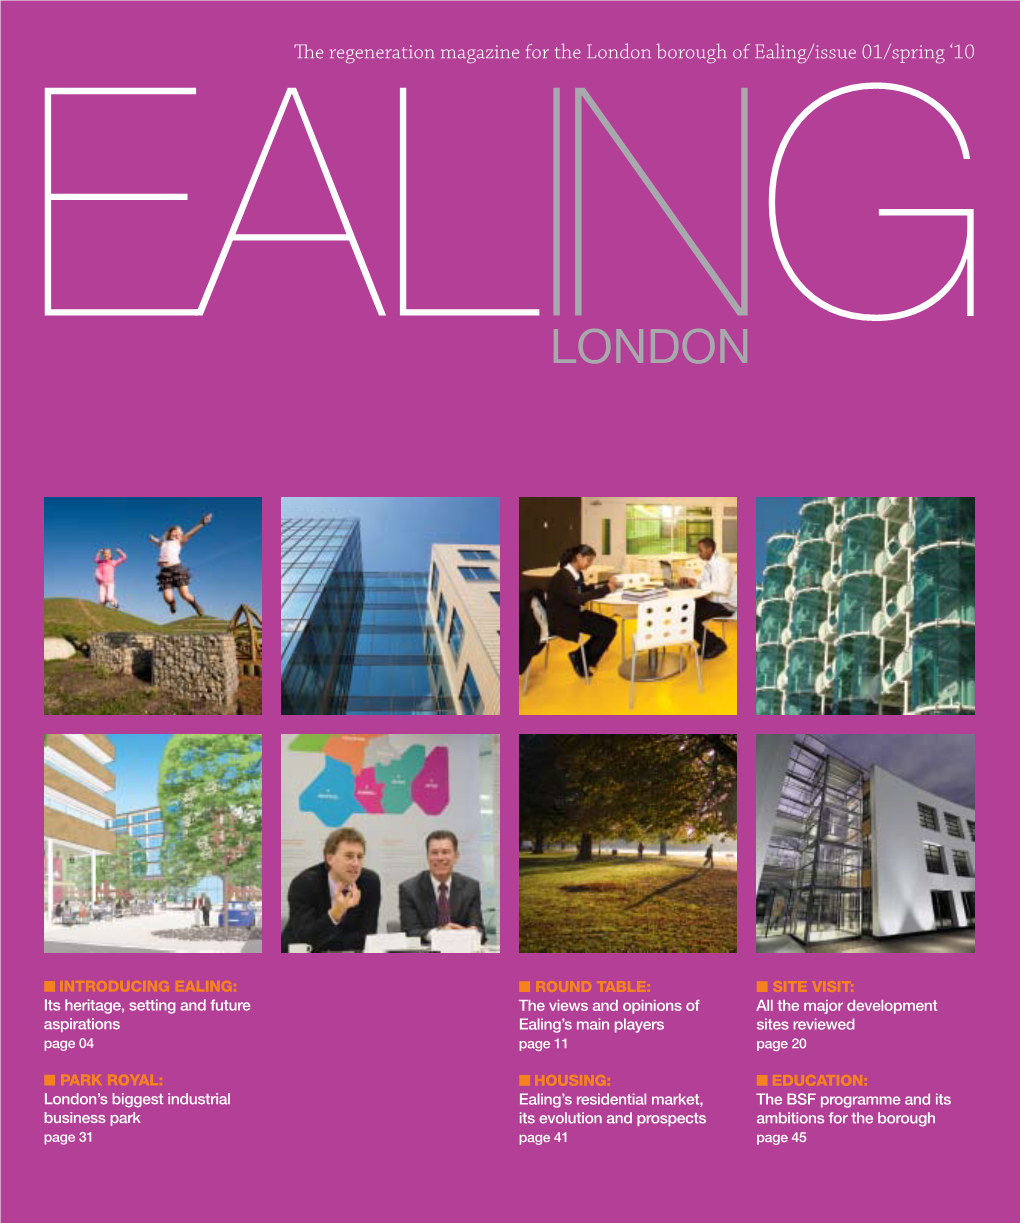 London Borough of Ealing/Issue 01/Spring ‘10 Ealing London